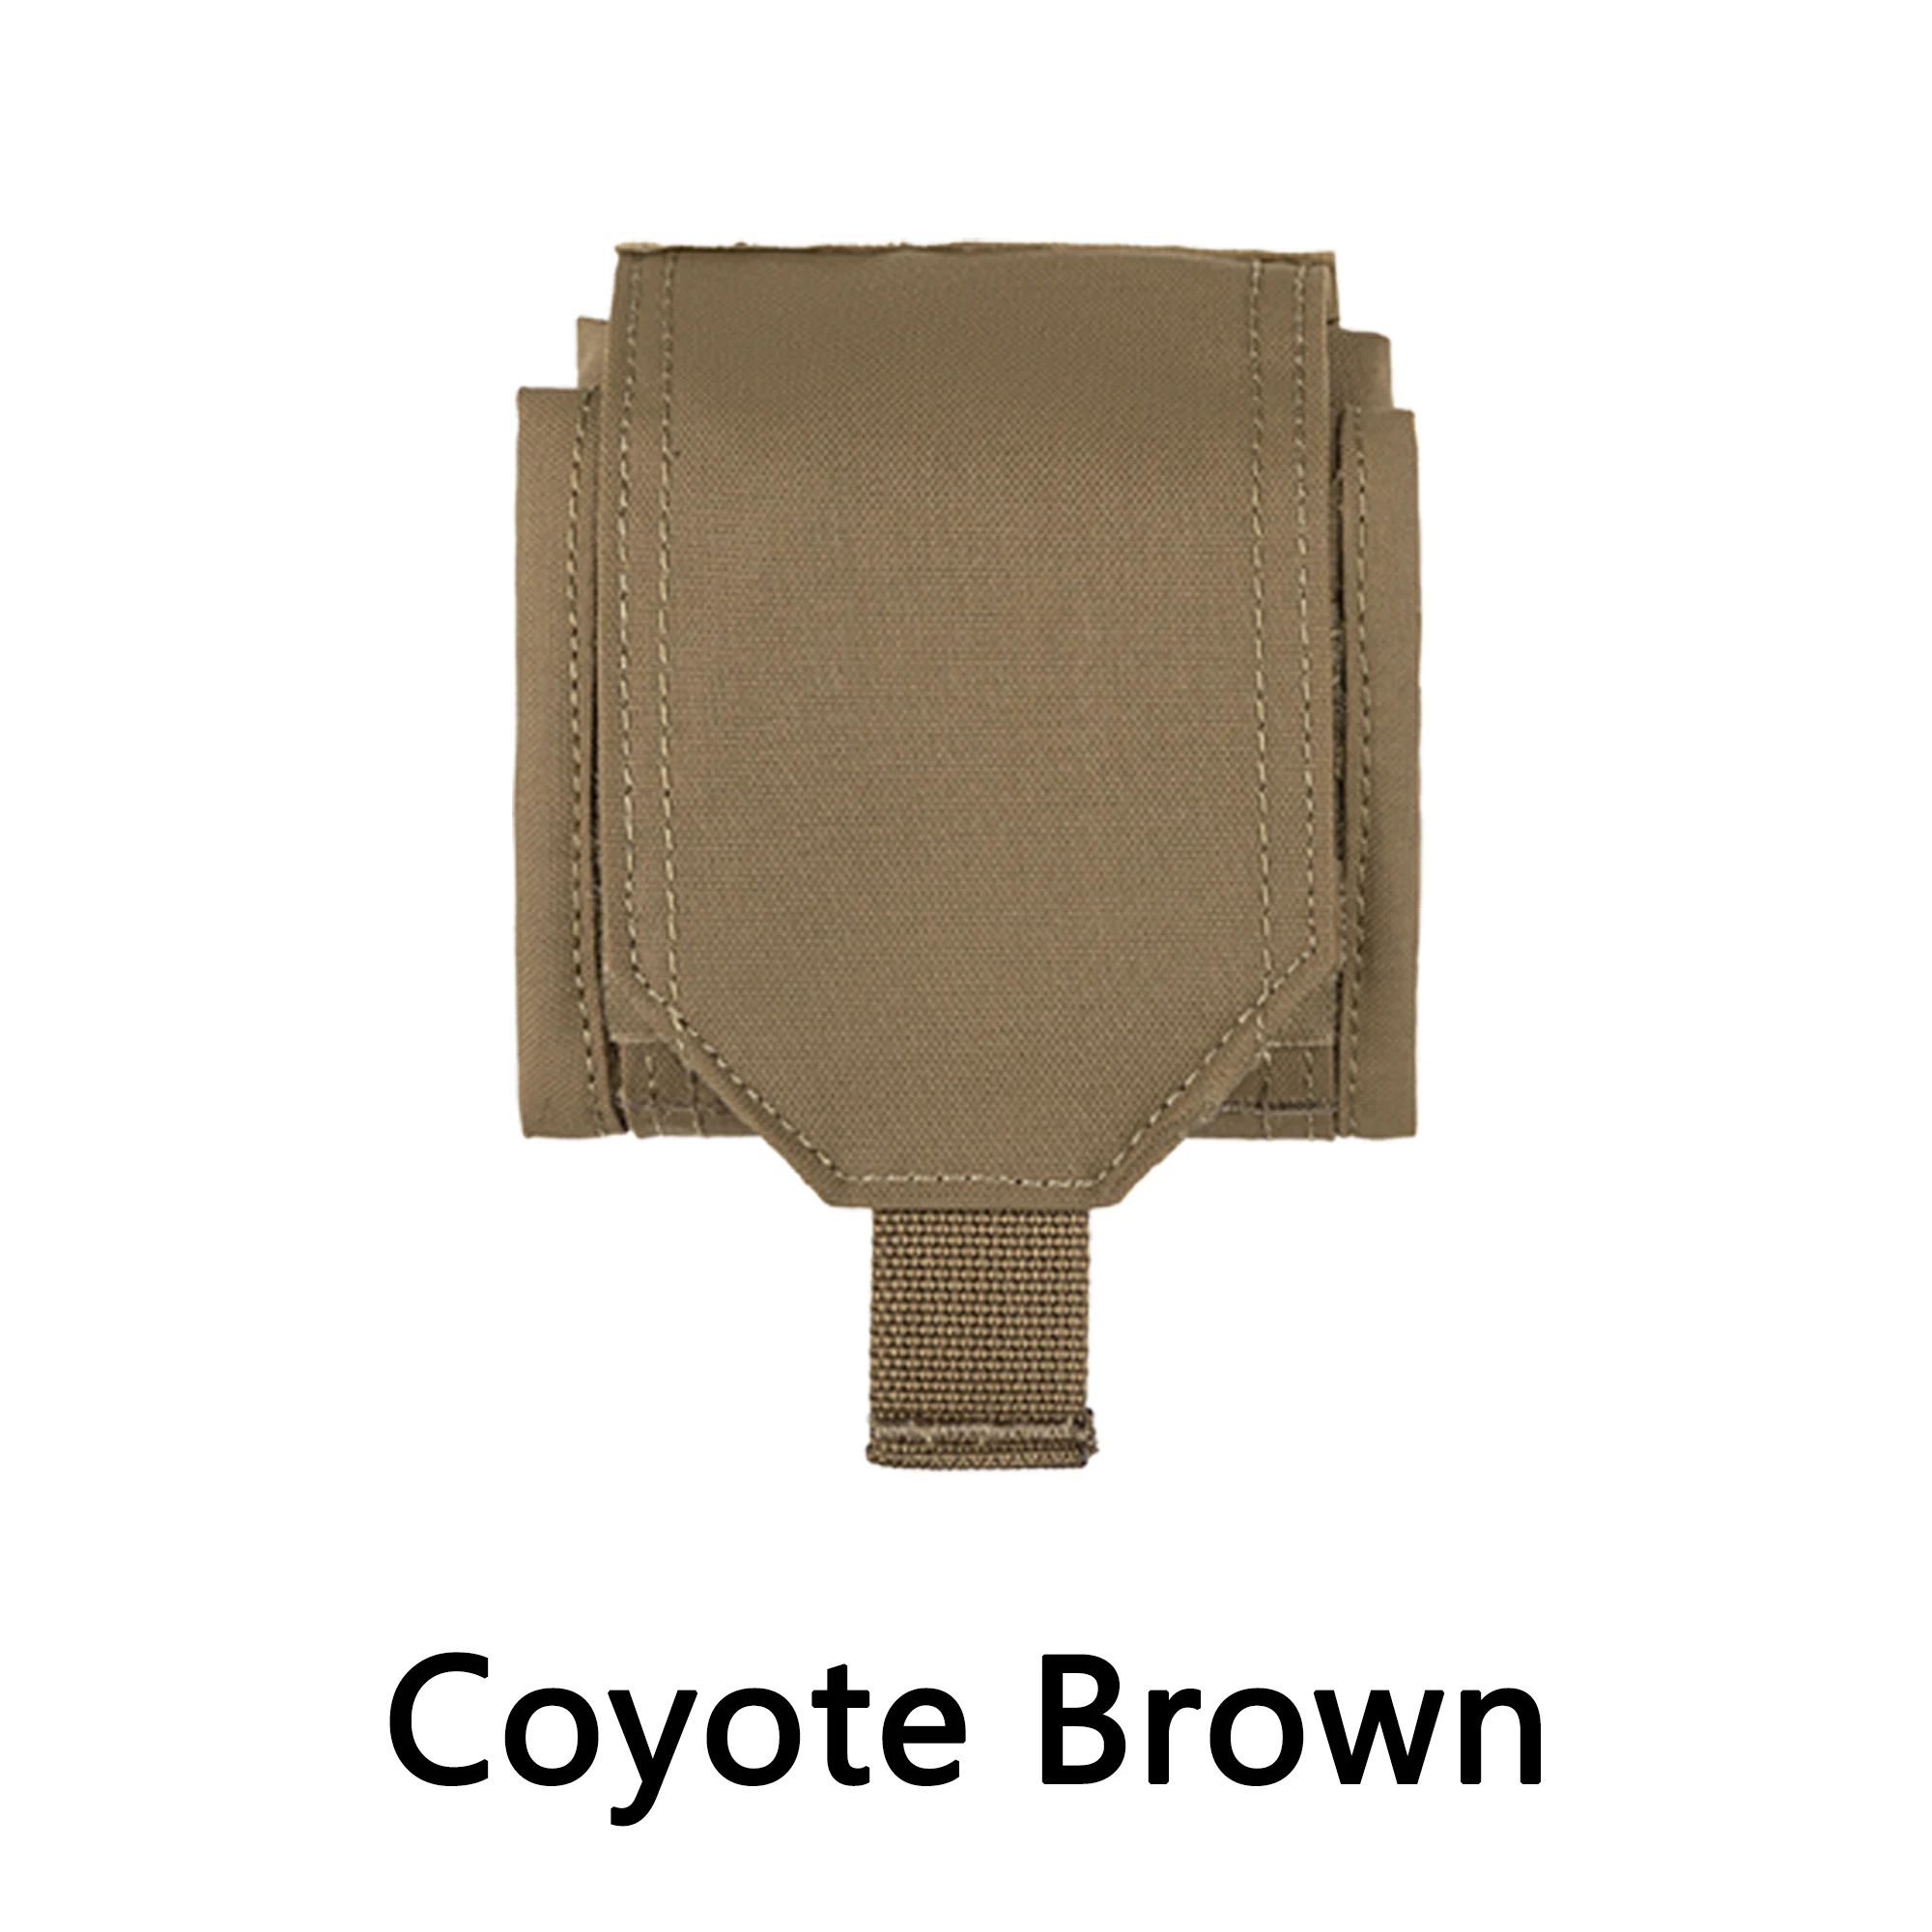 Color:Coyote Brown